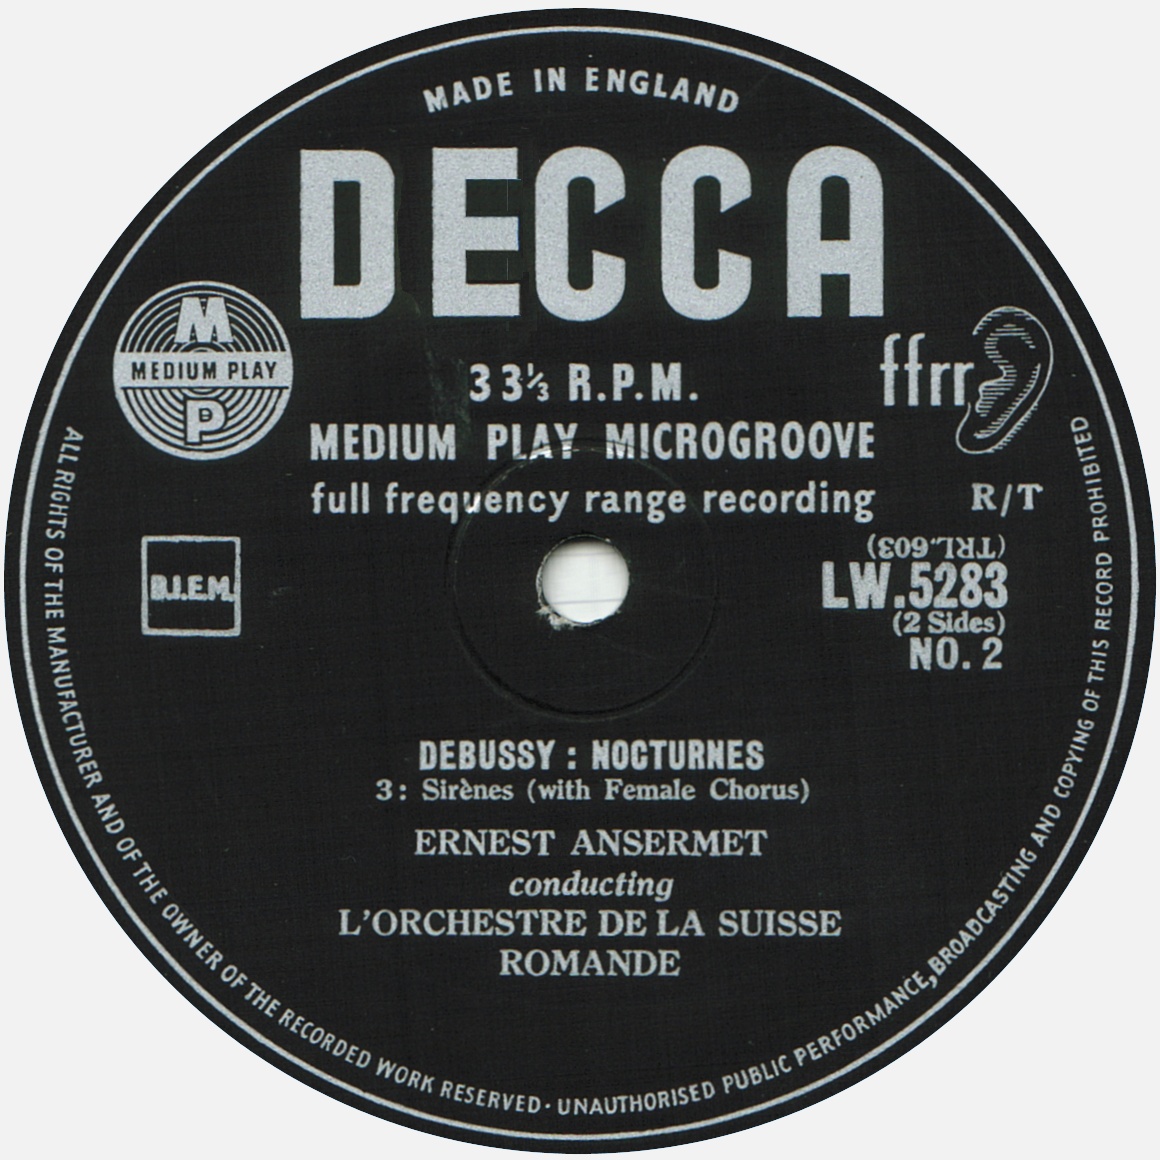 Disque Decca LW 5283, étiquette verso, cliquer pour une vue agrandie